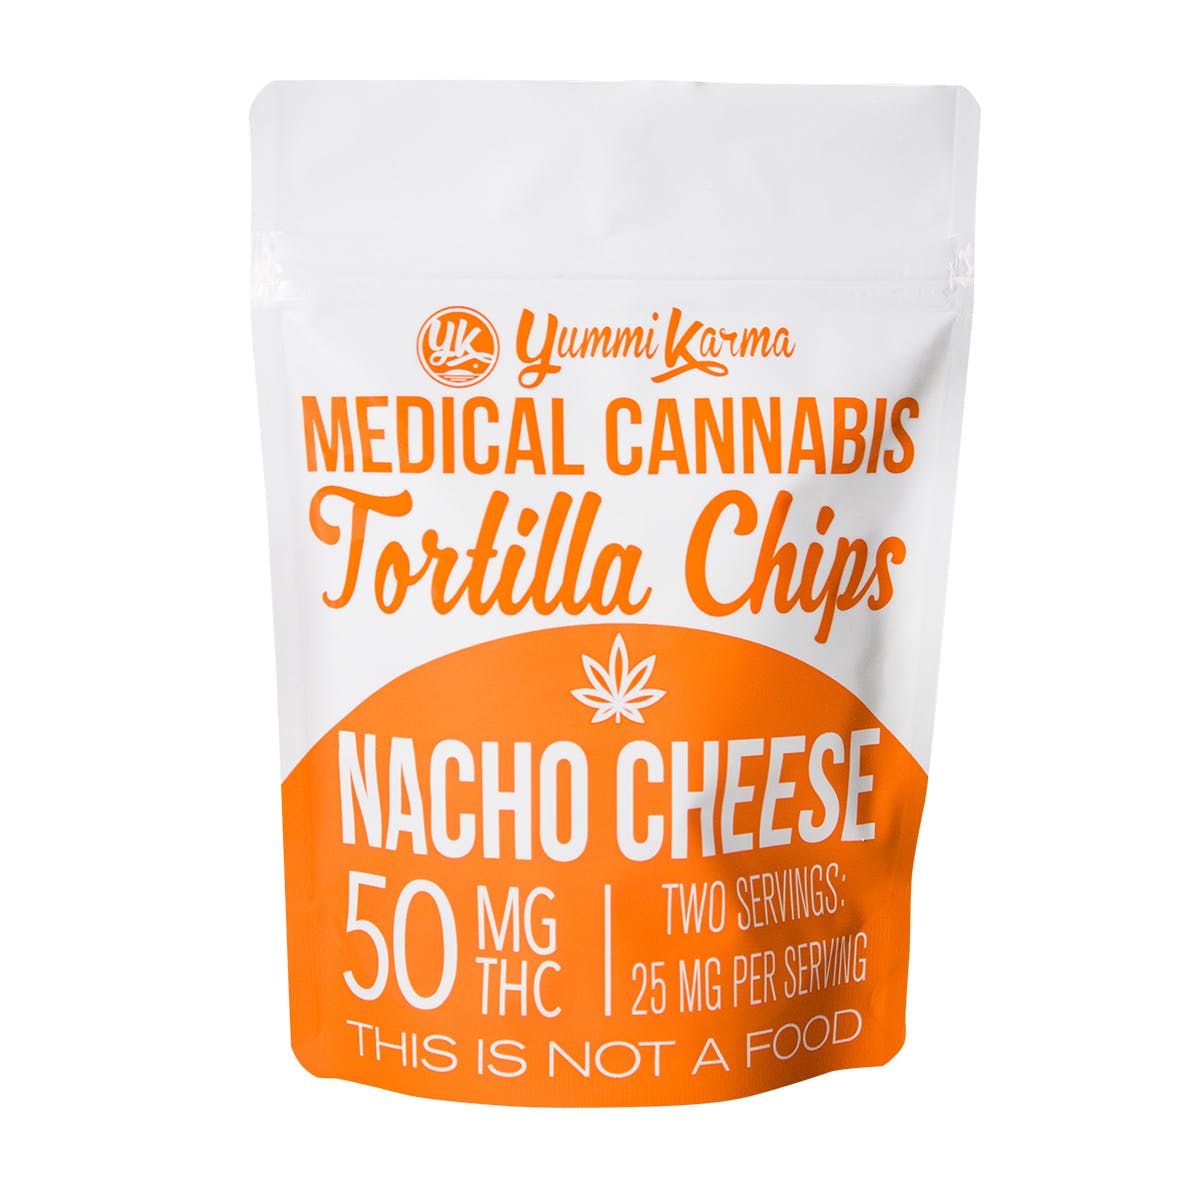 Medical Cannabis Tortilla Chips, Nacho Cheese 50mg